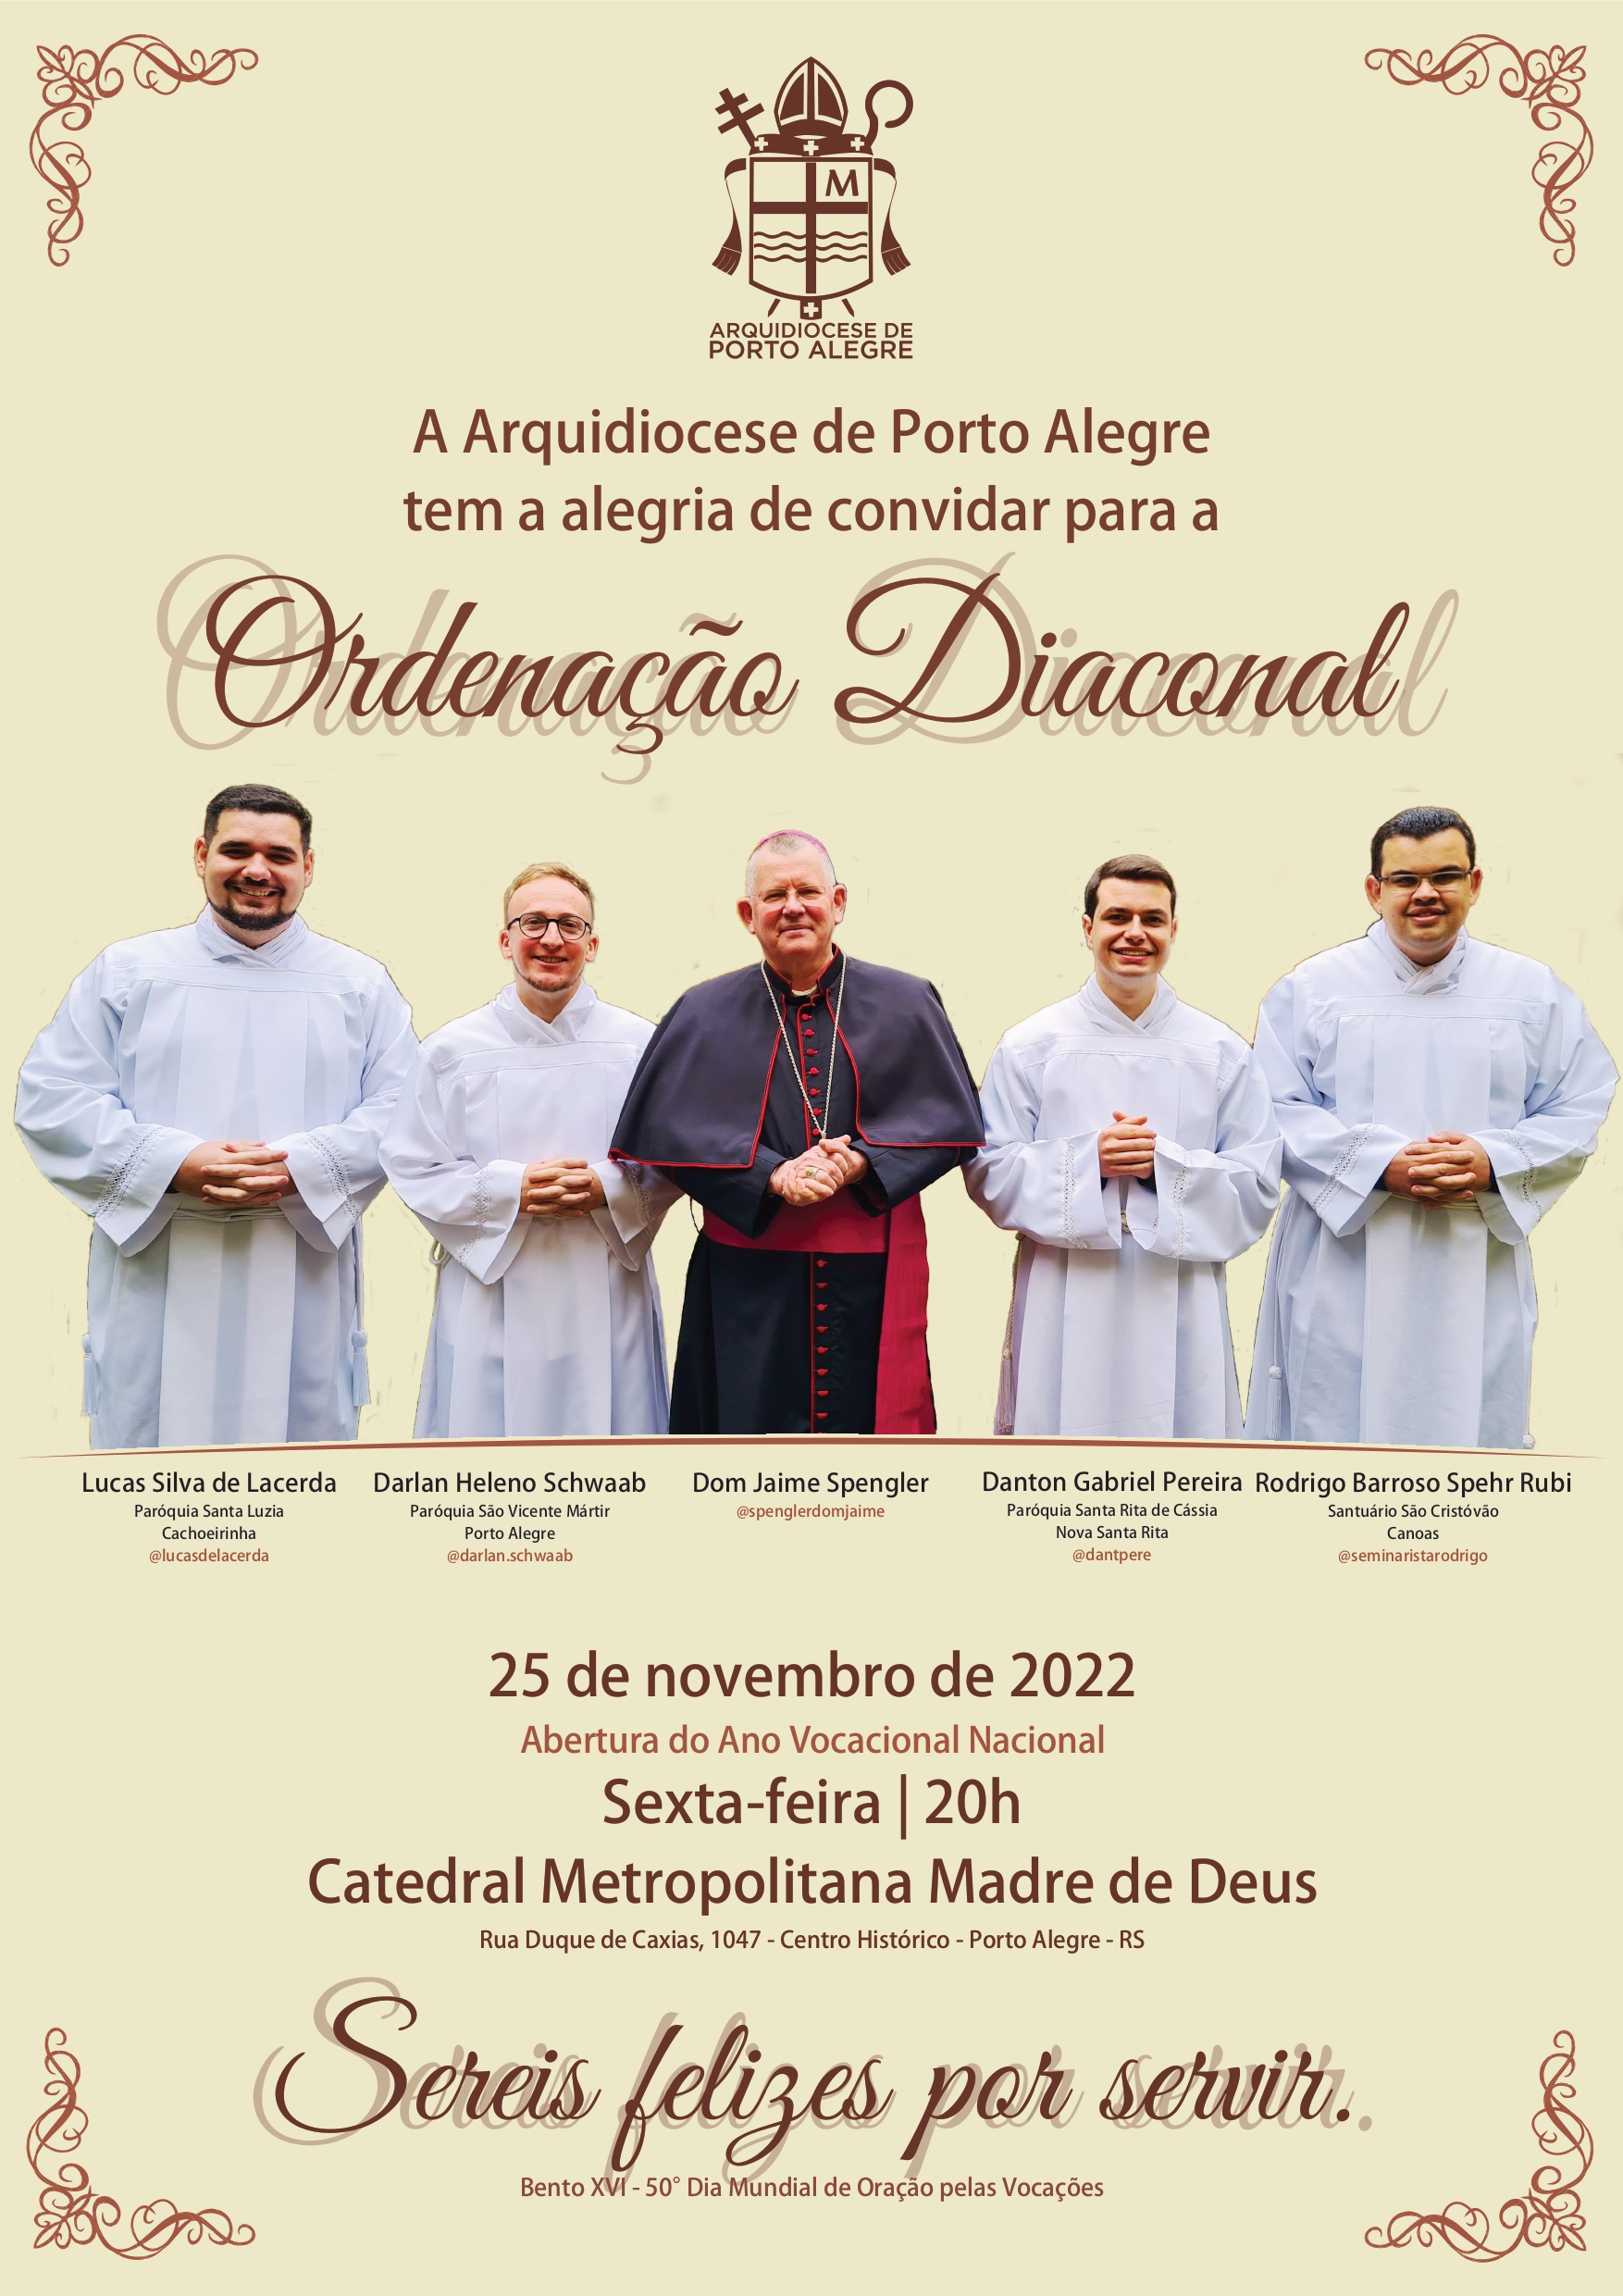 Quatro seminaristas da Arquidiocese serão ordenados diáconos nesta sexta-feira